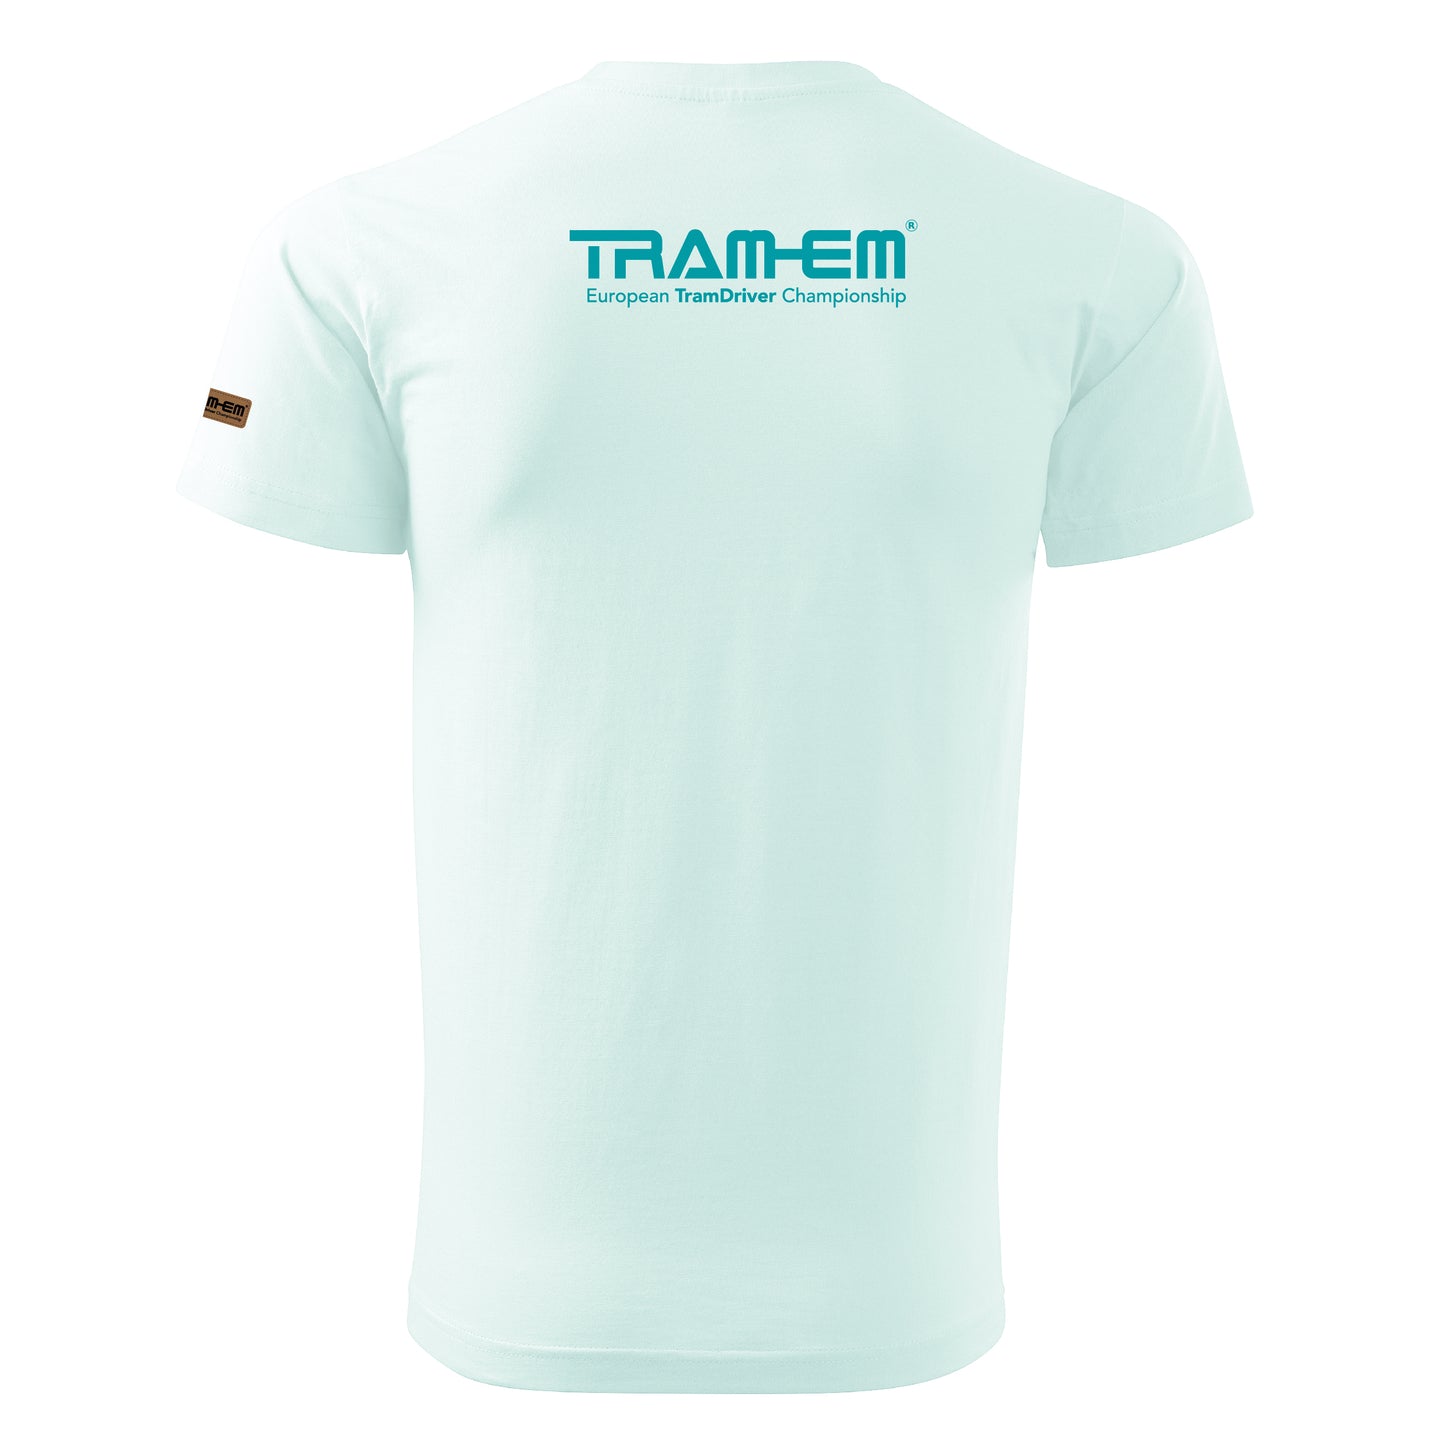 TRAM-EM Frankfurt (Main) 2024 | Basic Unisex T-Shirt